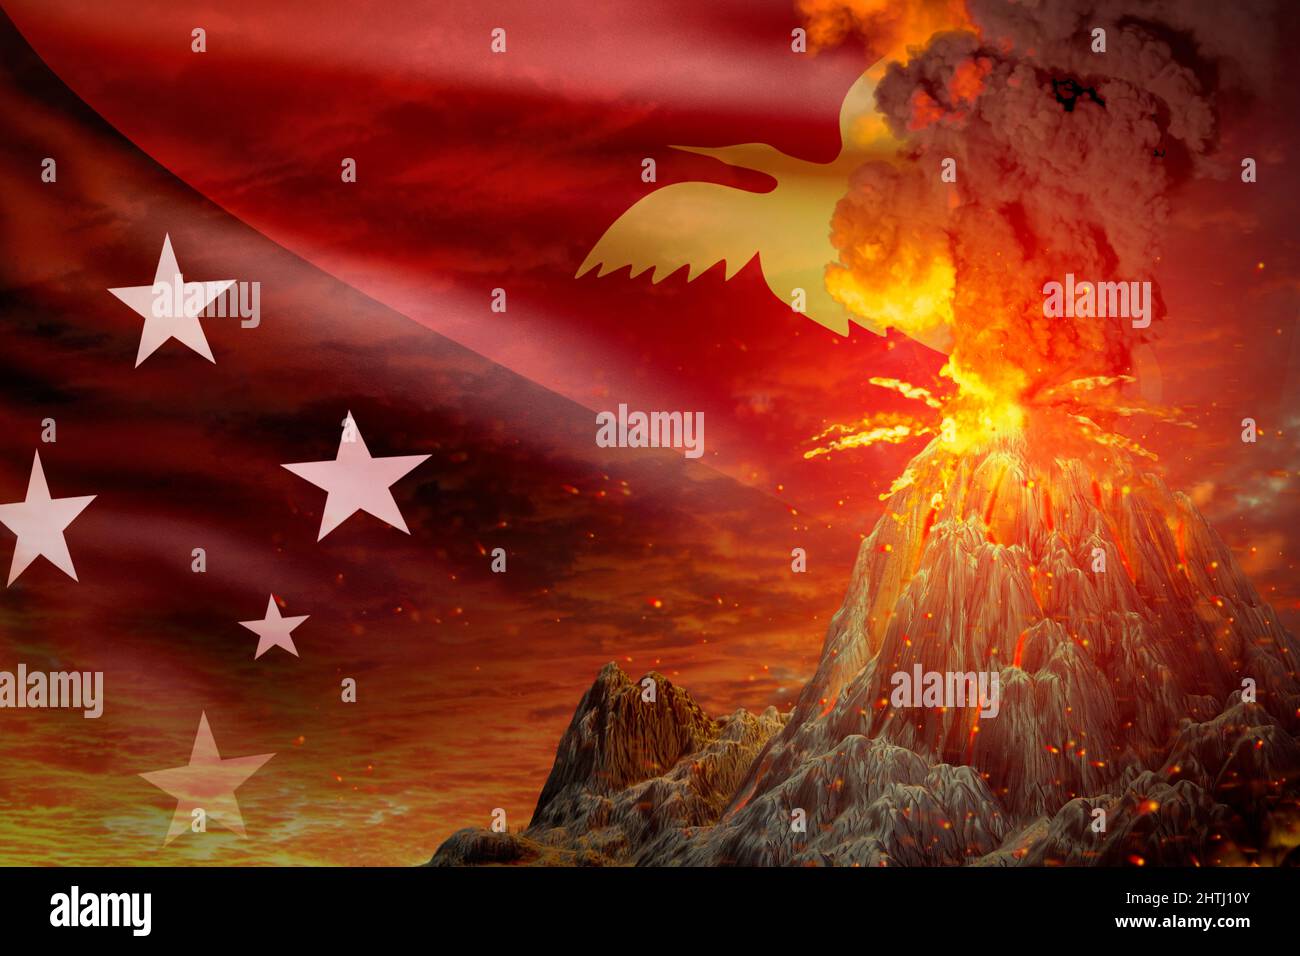 Großer Vulkanausbruch in der Nacht mit Explosion auf Papua-Neuguinea Flagge Hintergrund, Probleme wegen der Naturkatastrophe und Vulkanasche konzeptu Stockfoto